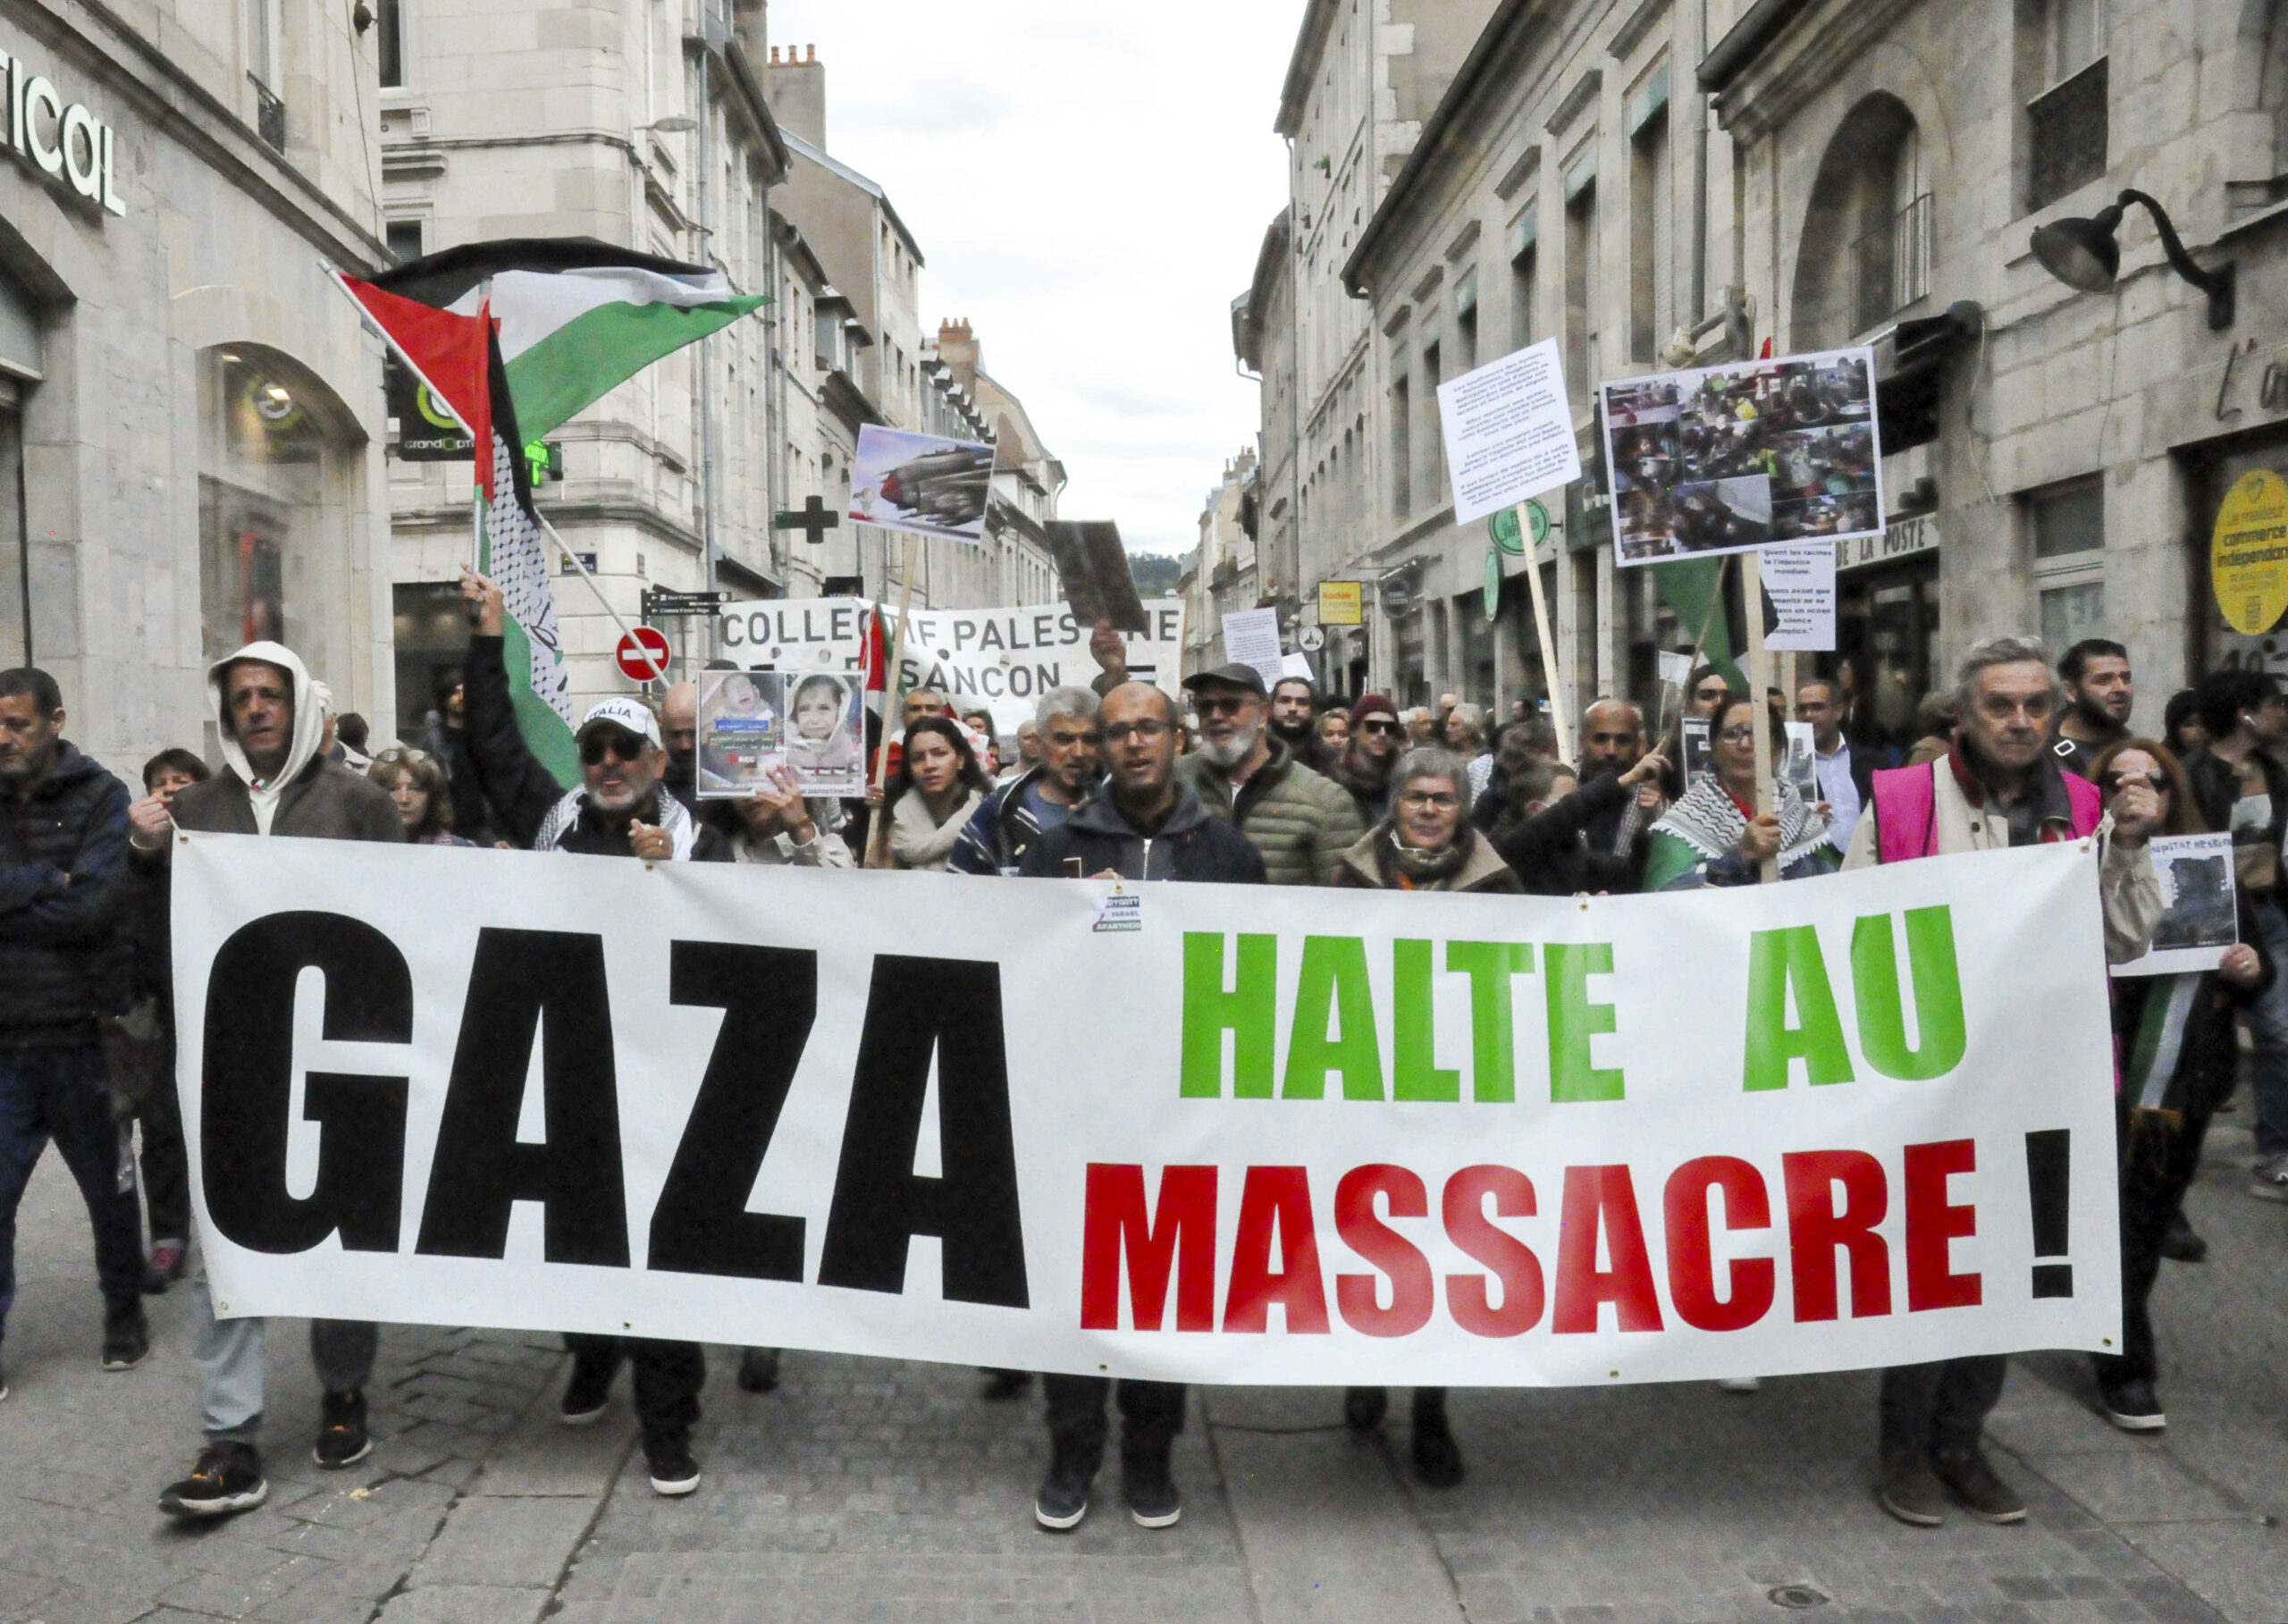 Tête de la manifestation en soutien au peuple palestinien. Les participantes et participants tiennent une large banderole où il est écrit en noir vert et rouge : "Gaza, halte au massacre."